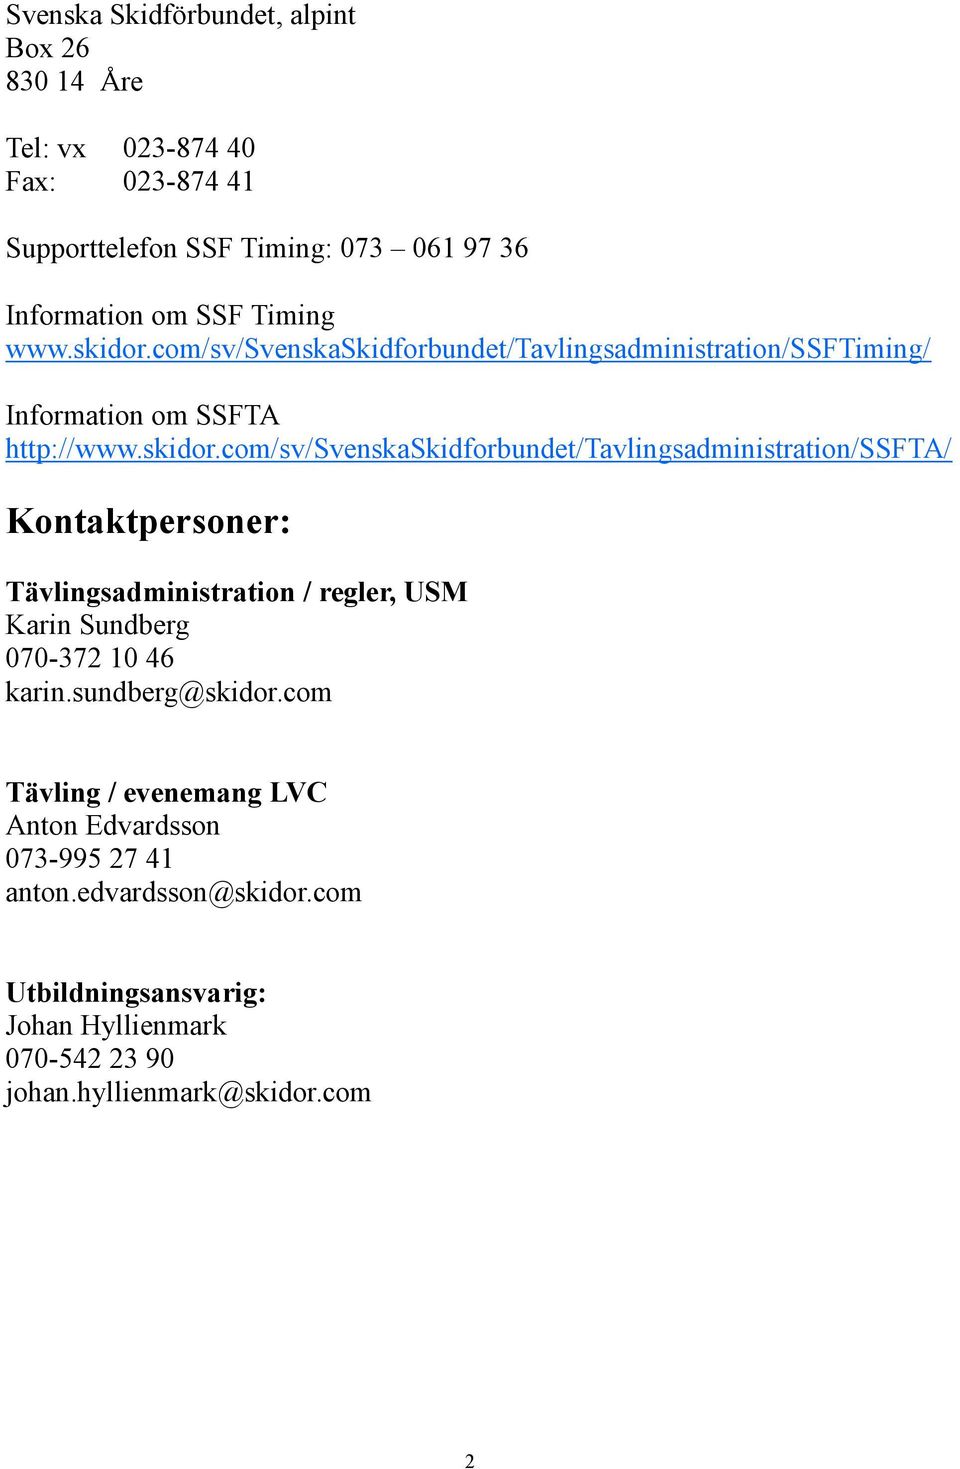 com/sv/svenskaskidforbundet/tavlingsadministration/ssftiming/ Information om SSFTA http://www.skidor.